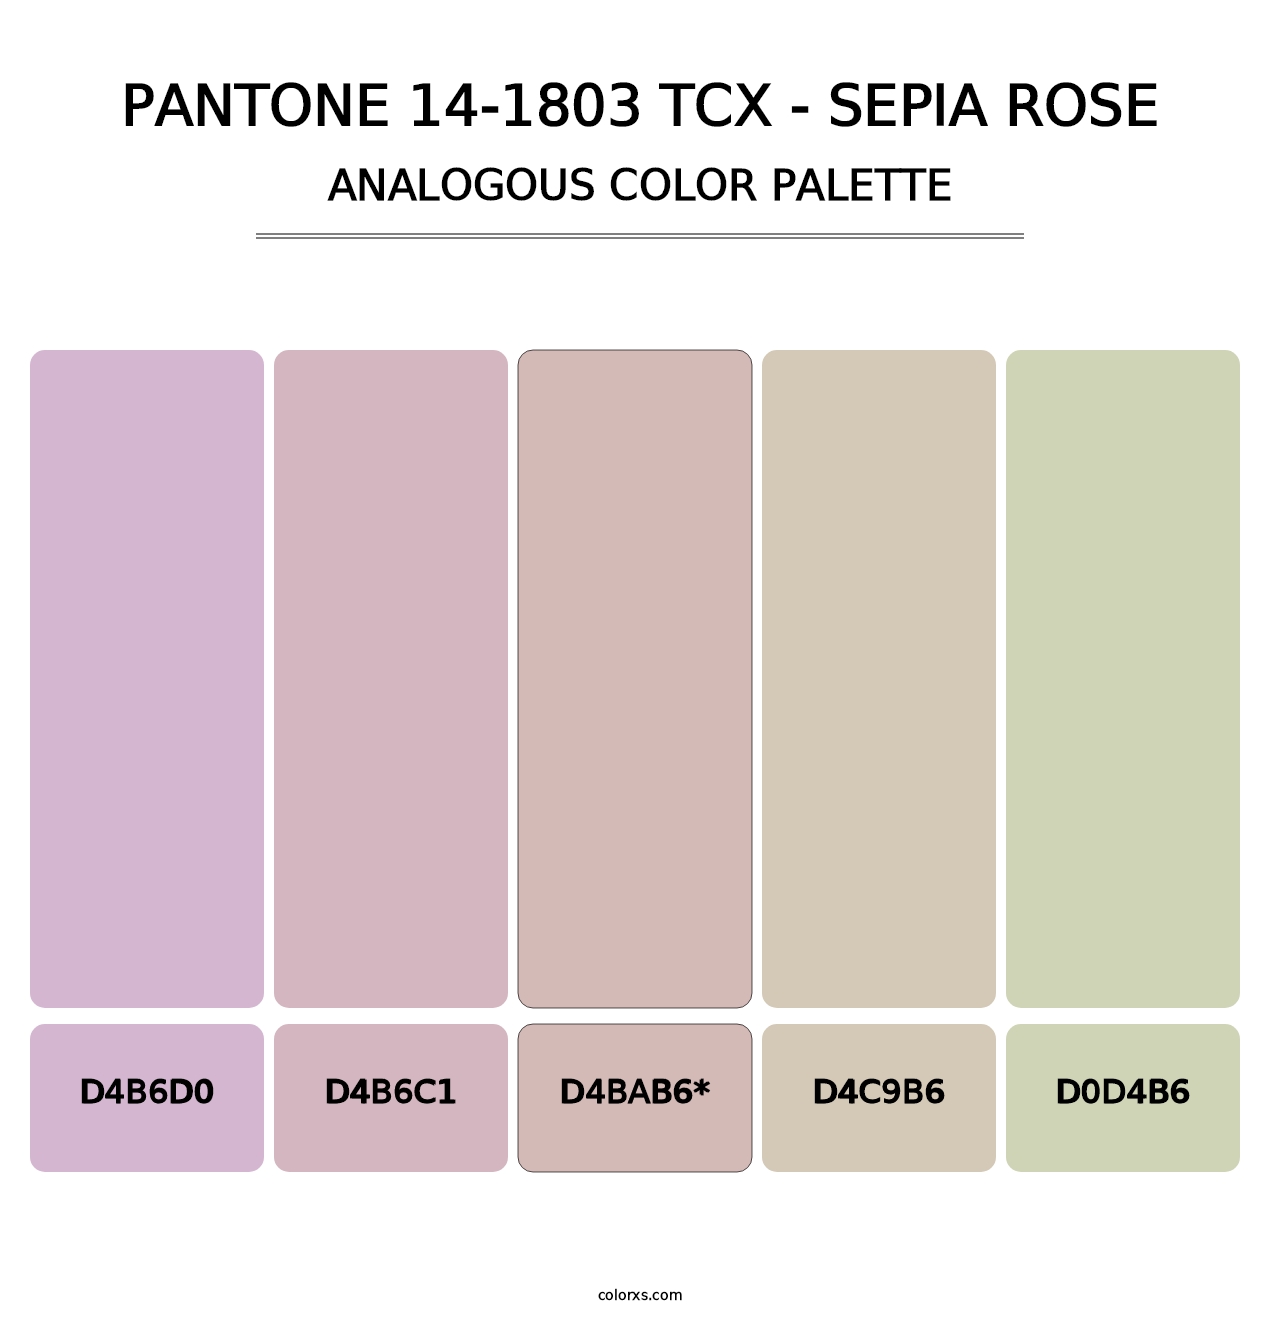 PANTONE 14-1803 TCX - Sepia Rose - Analogous Color Palette